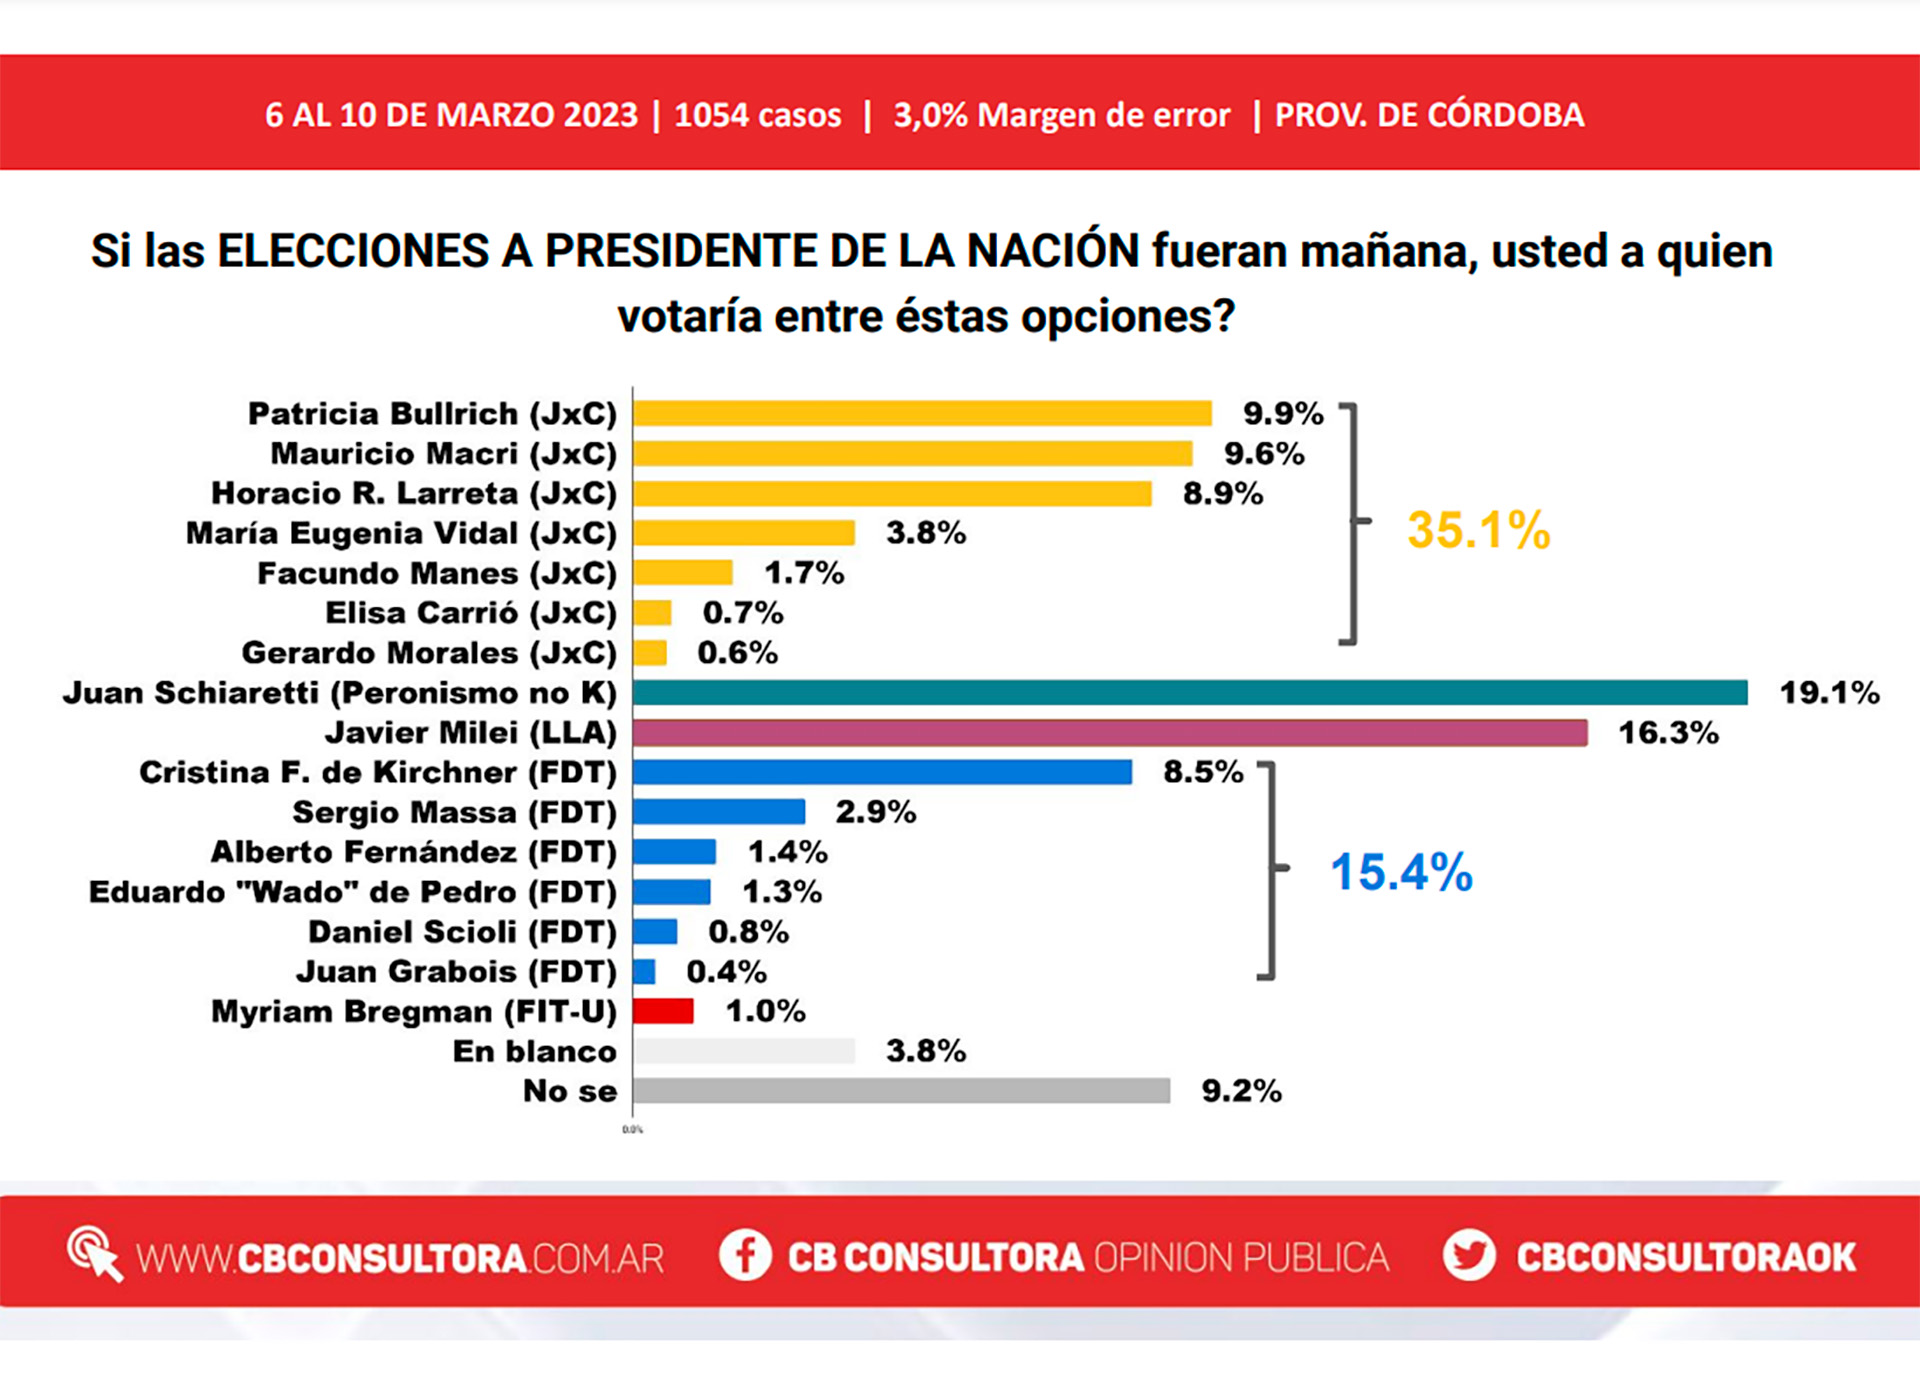 El gobernador de Córdoba Juan Schiaretti es el candidato a Presidente más votado en su provincia con 19,1%